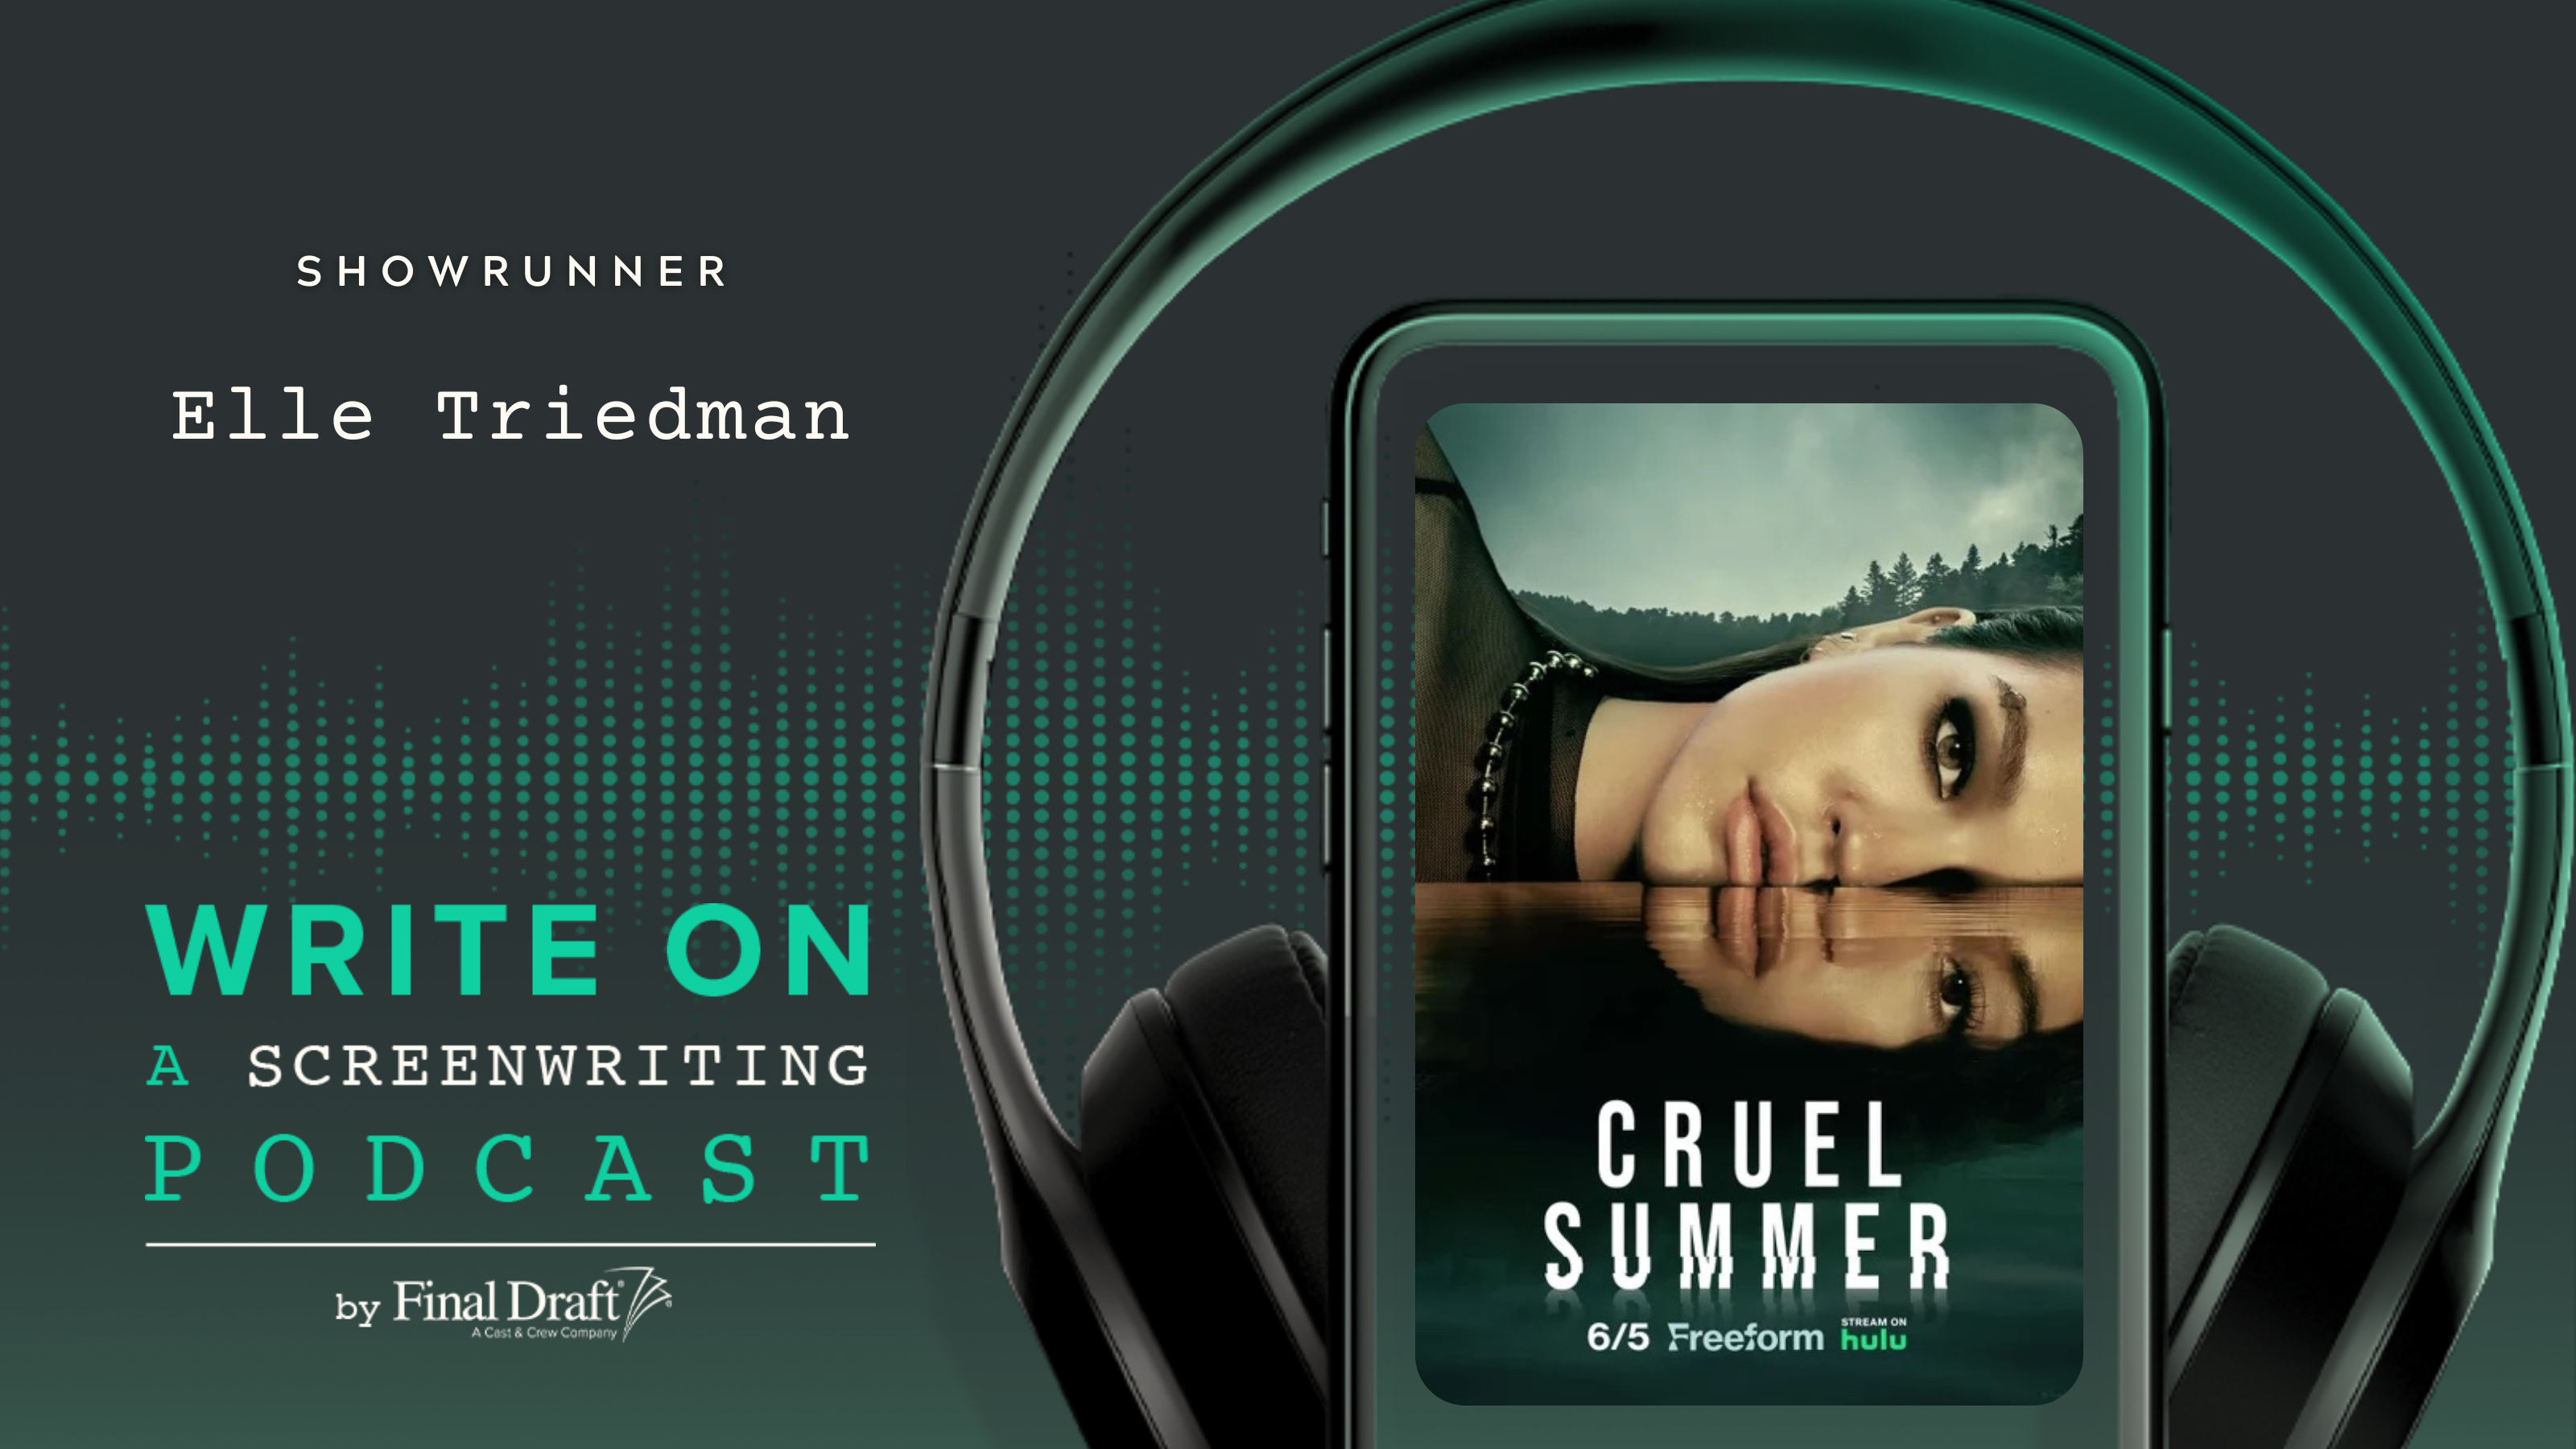 Write On: Cruel Summer's Showrunner Elle Triedman